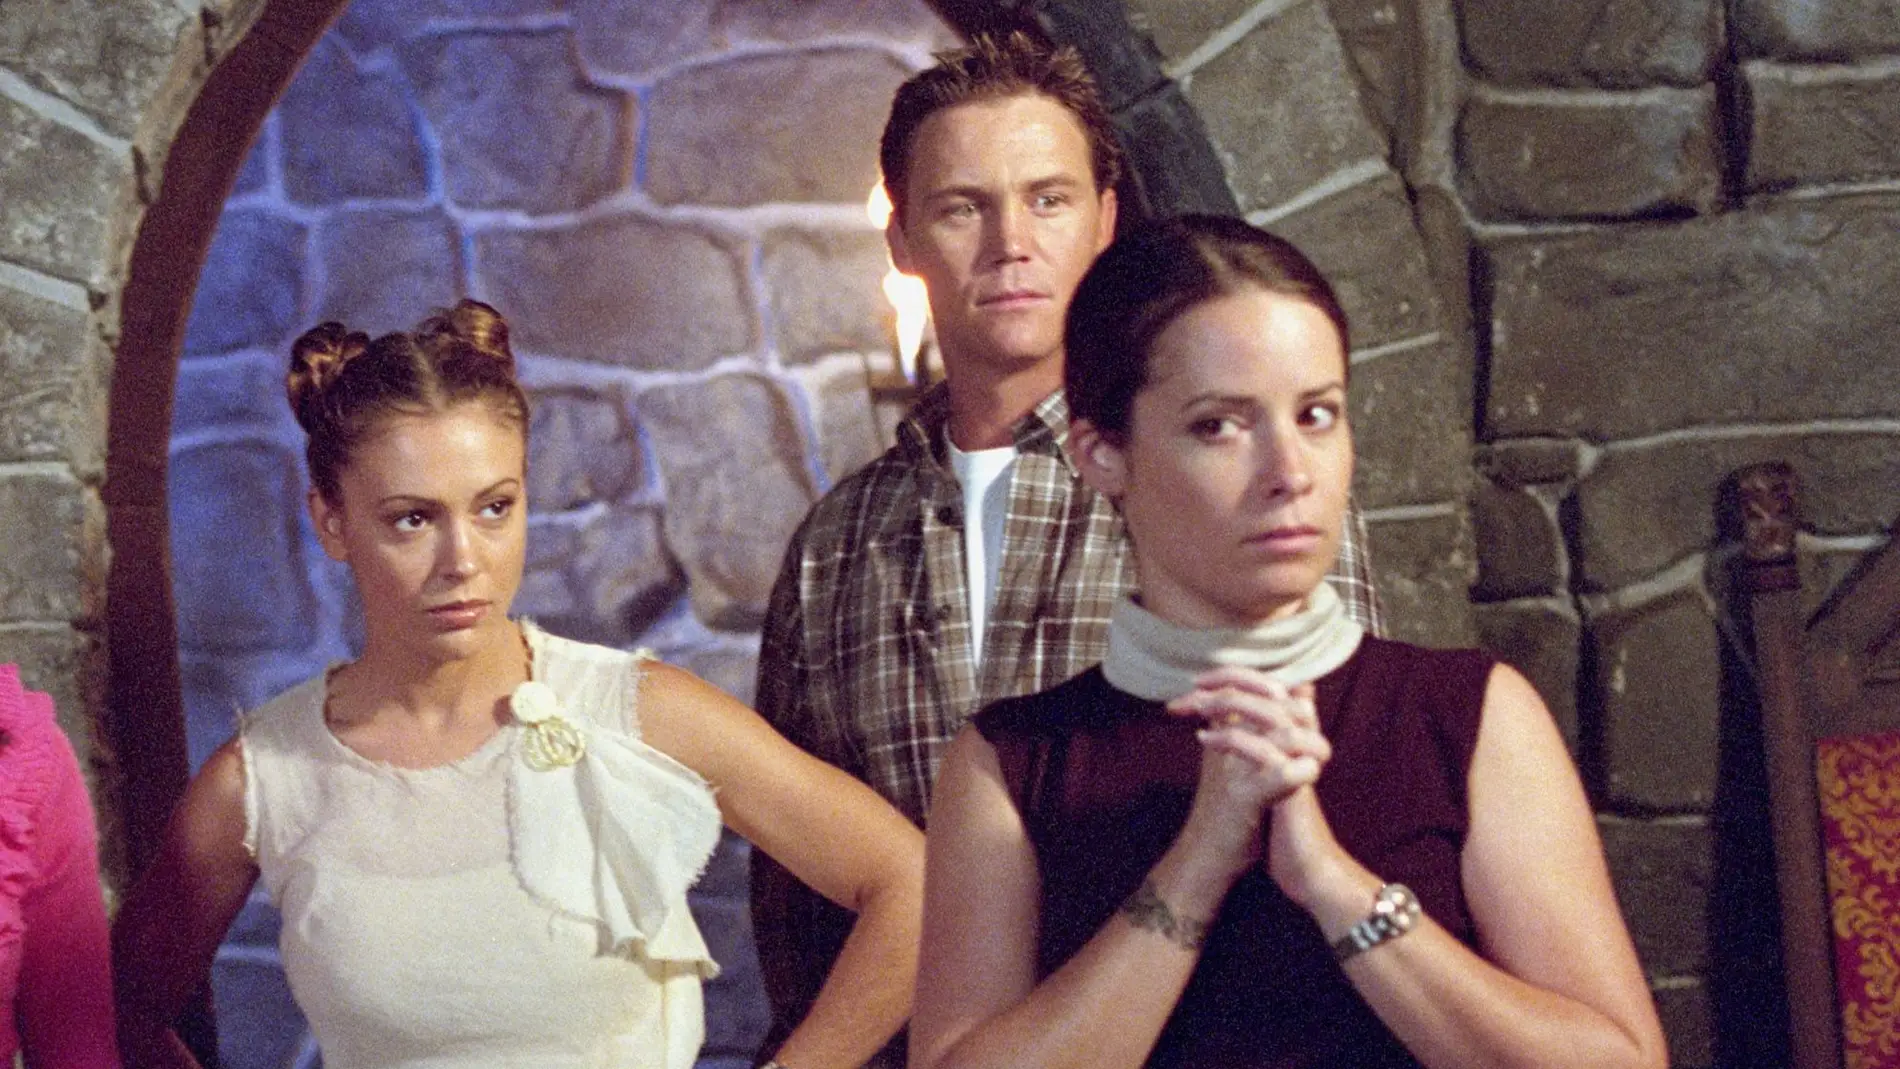 Alyssa Milano, Brian Krause, Holly Marie como Phoebe, Leo y Piper en el episodio A Knight to Remember en Embrujadas en el 2001